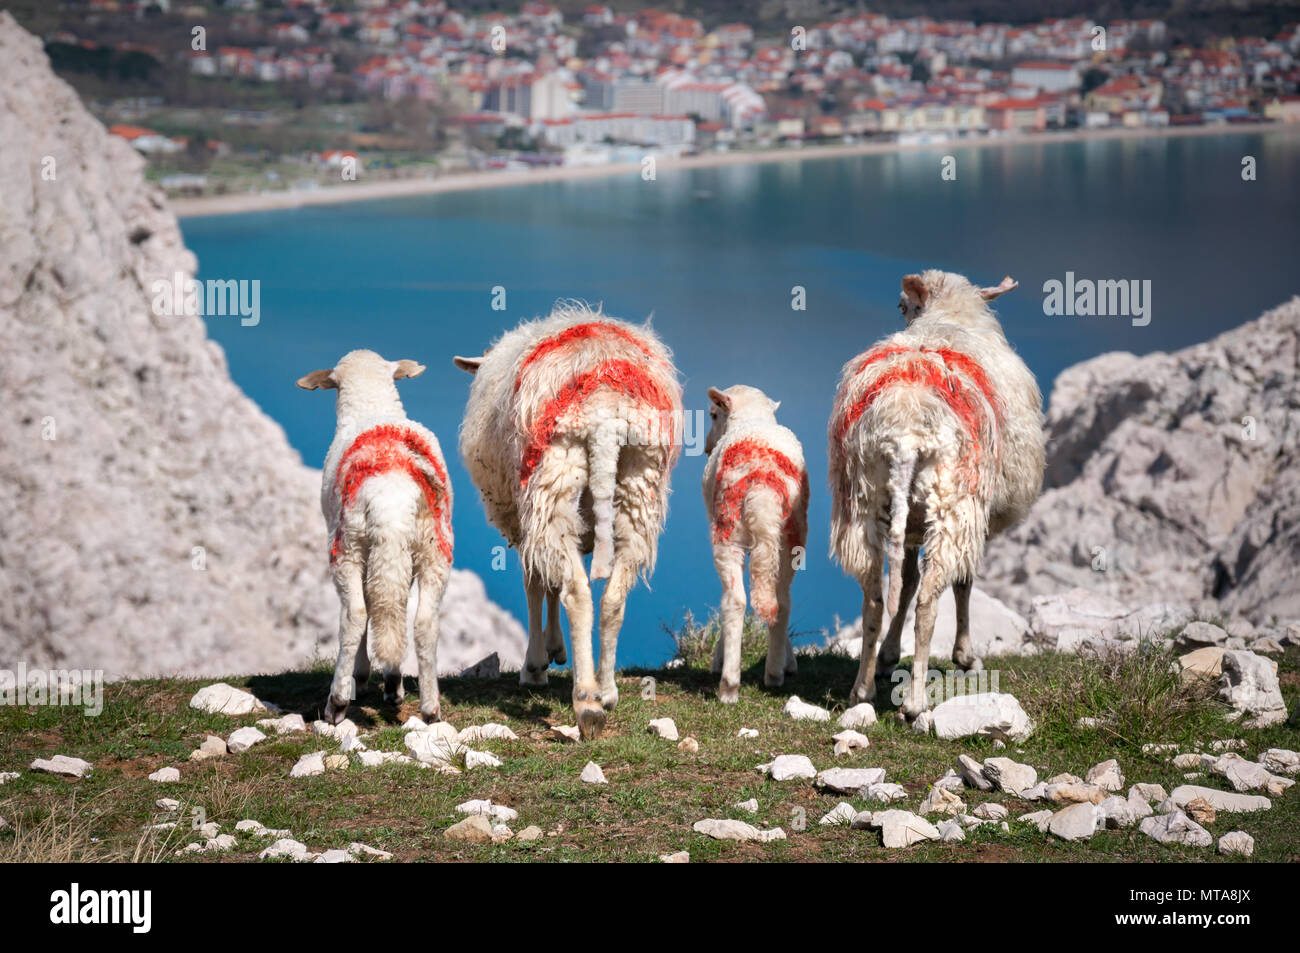 Moutons et agneaux avec marquages rouges, debout sur une falaise au-dessus de la baie turquoise, à l'égard de population place dans la distance (Baska, Krk, Croatie) Banque D'Images